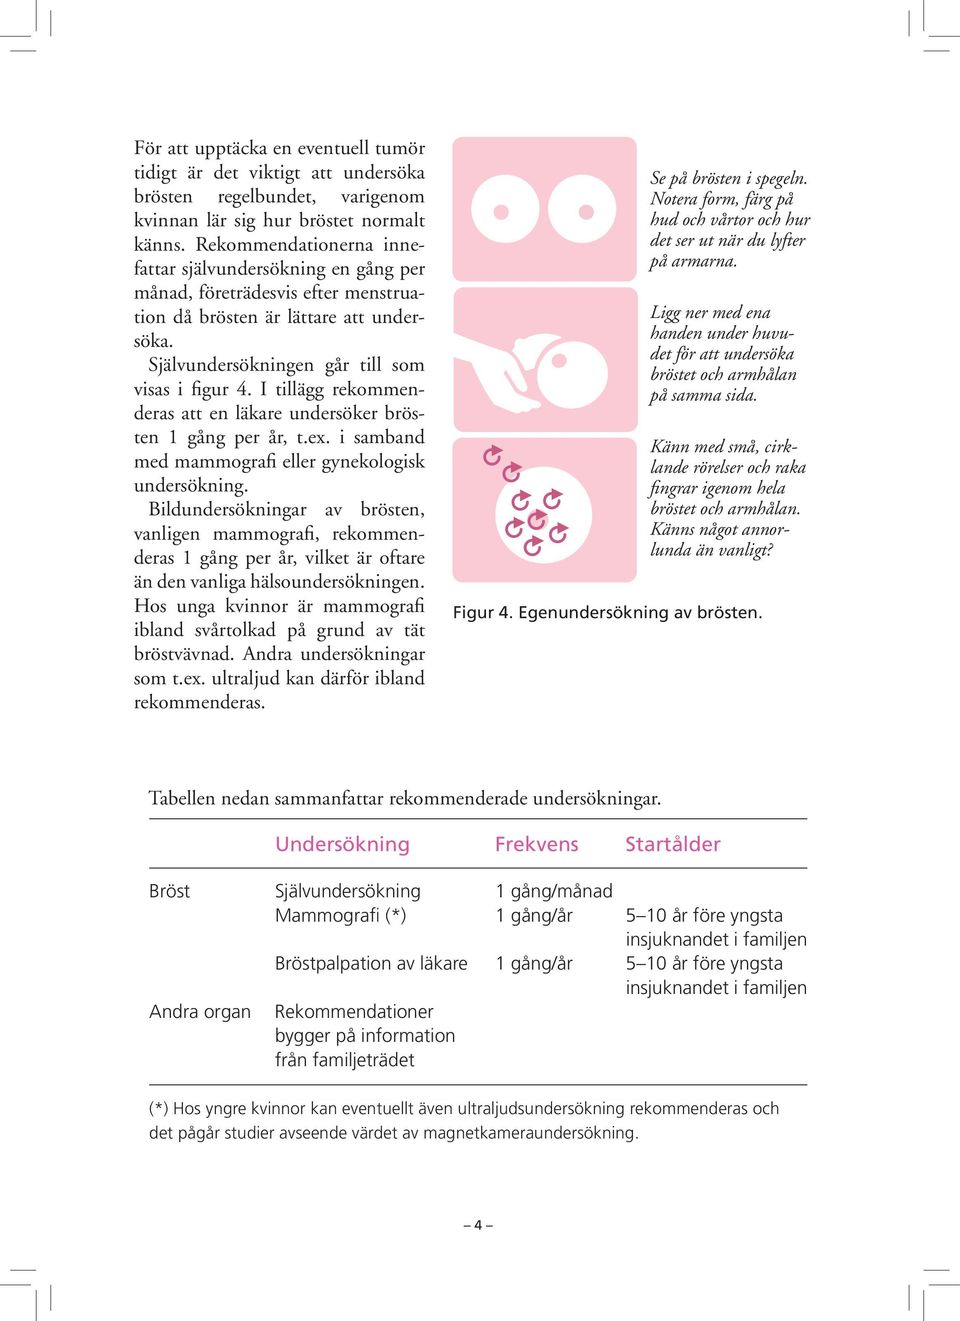 I tillägg rekommenderas att en läkare undersöker brösten 1 gång per år, t.ex. i samband med mammografi eller gynekologisk undersökning.